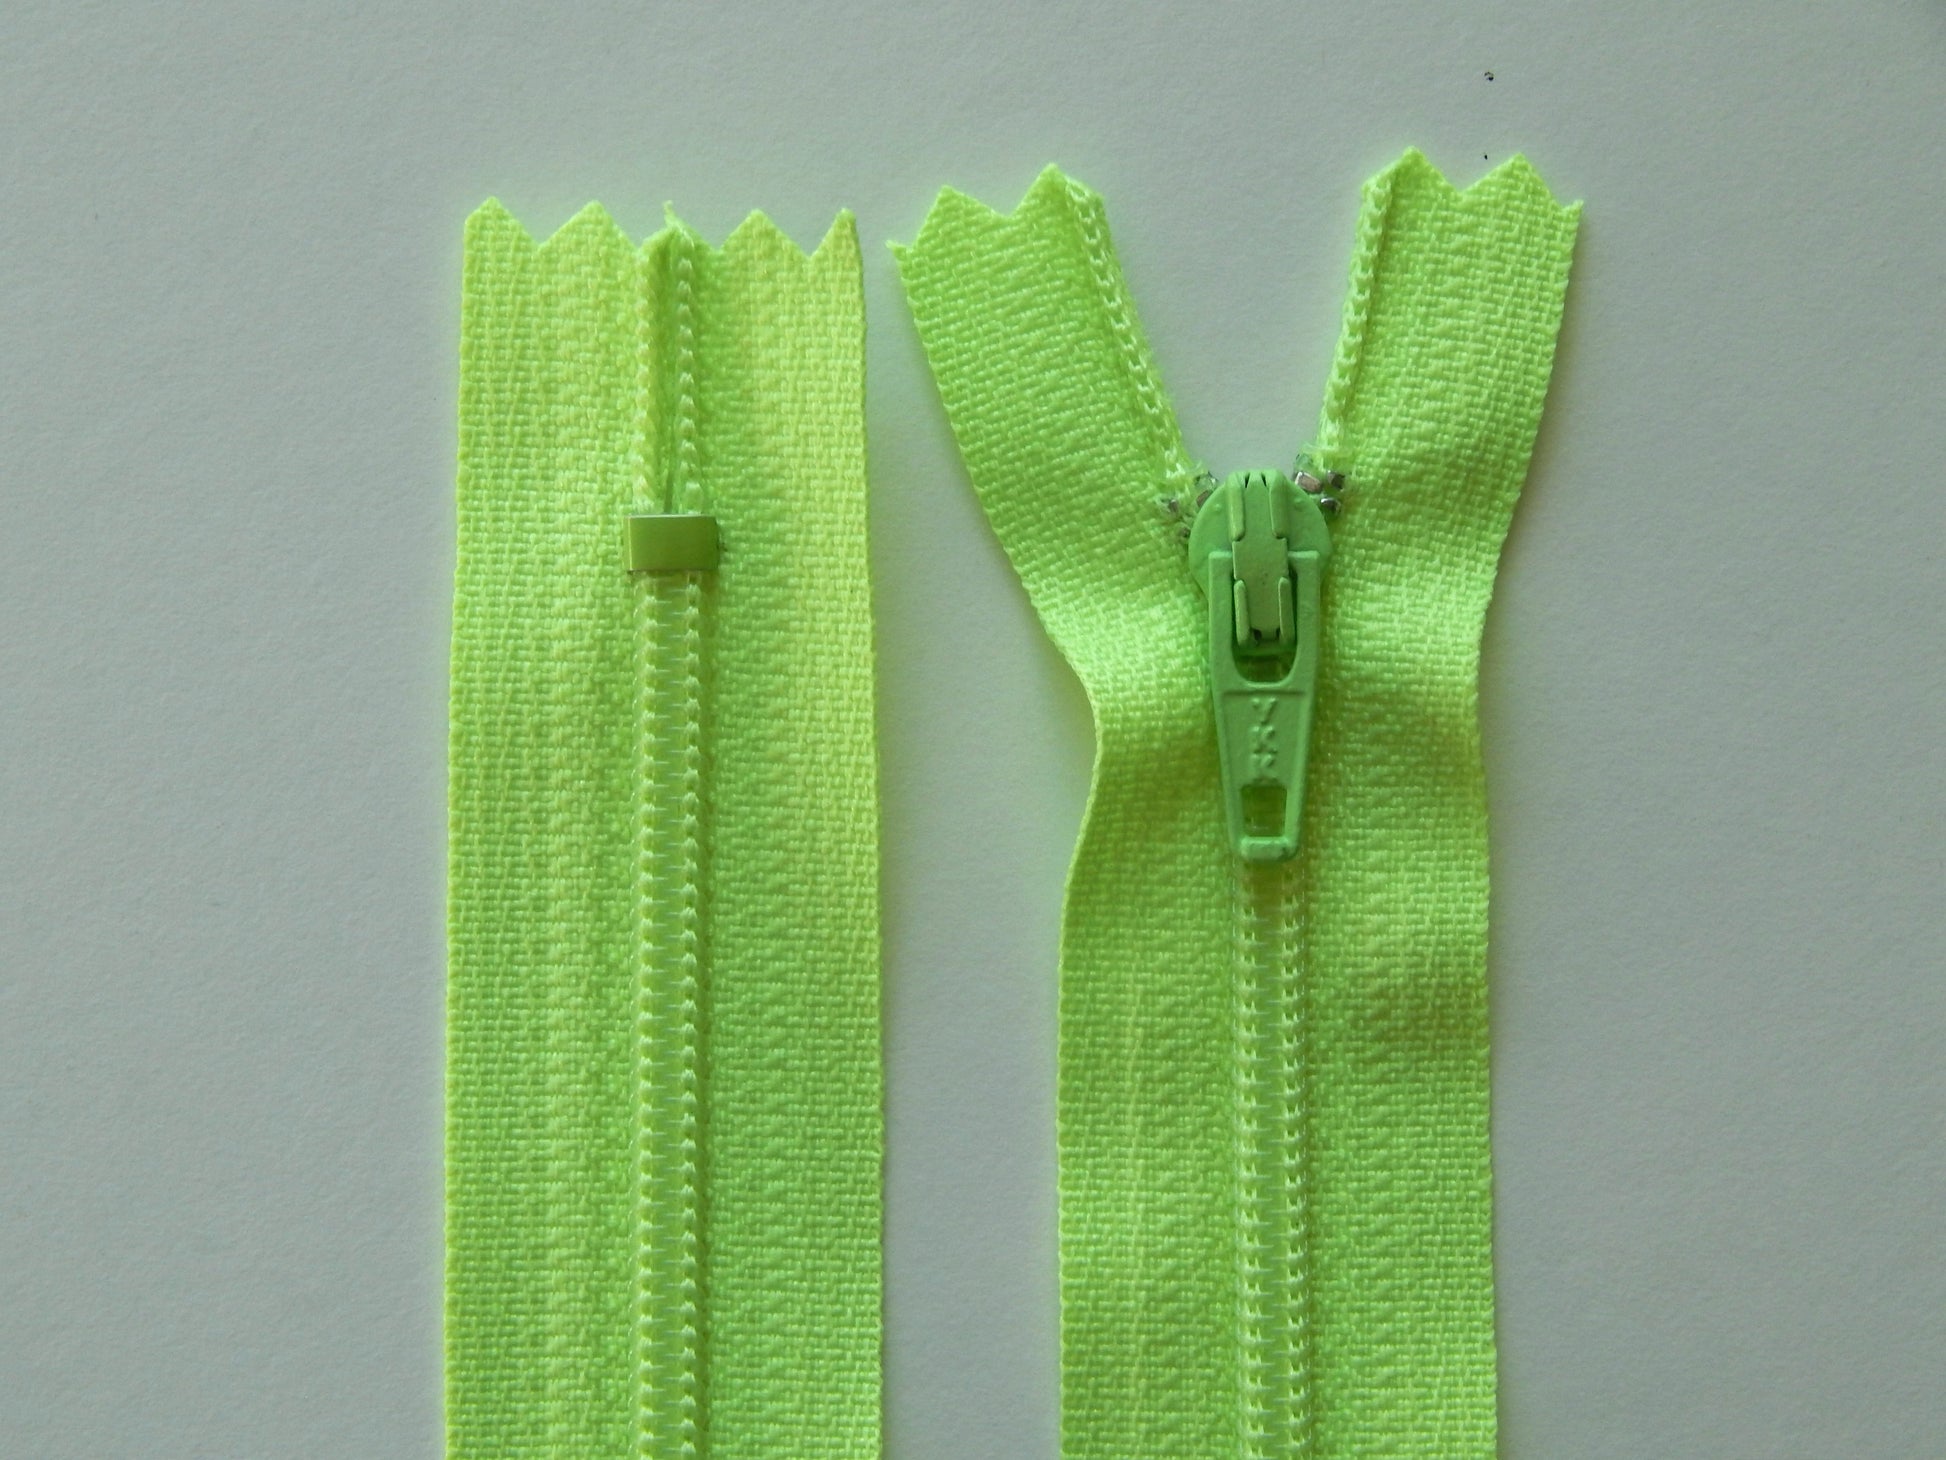 florescent green nylon dress zipper